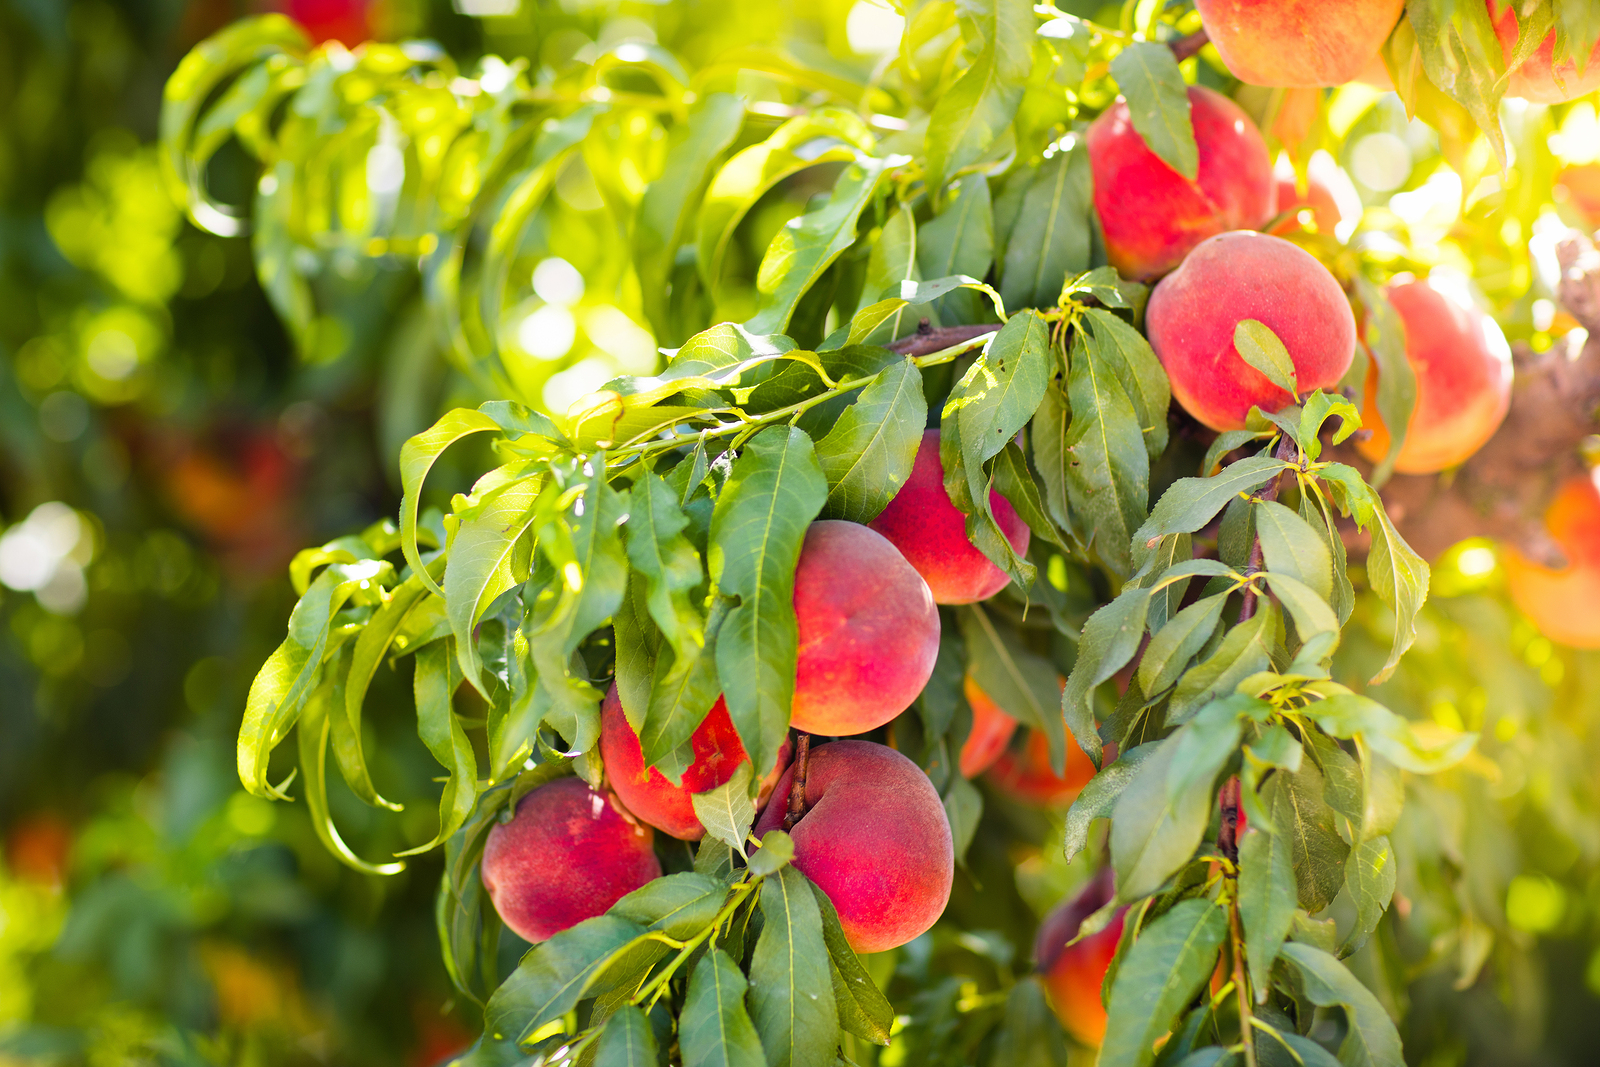 Orchard Fresh Peaches